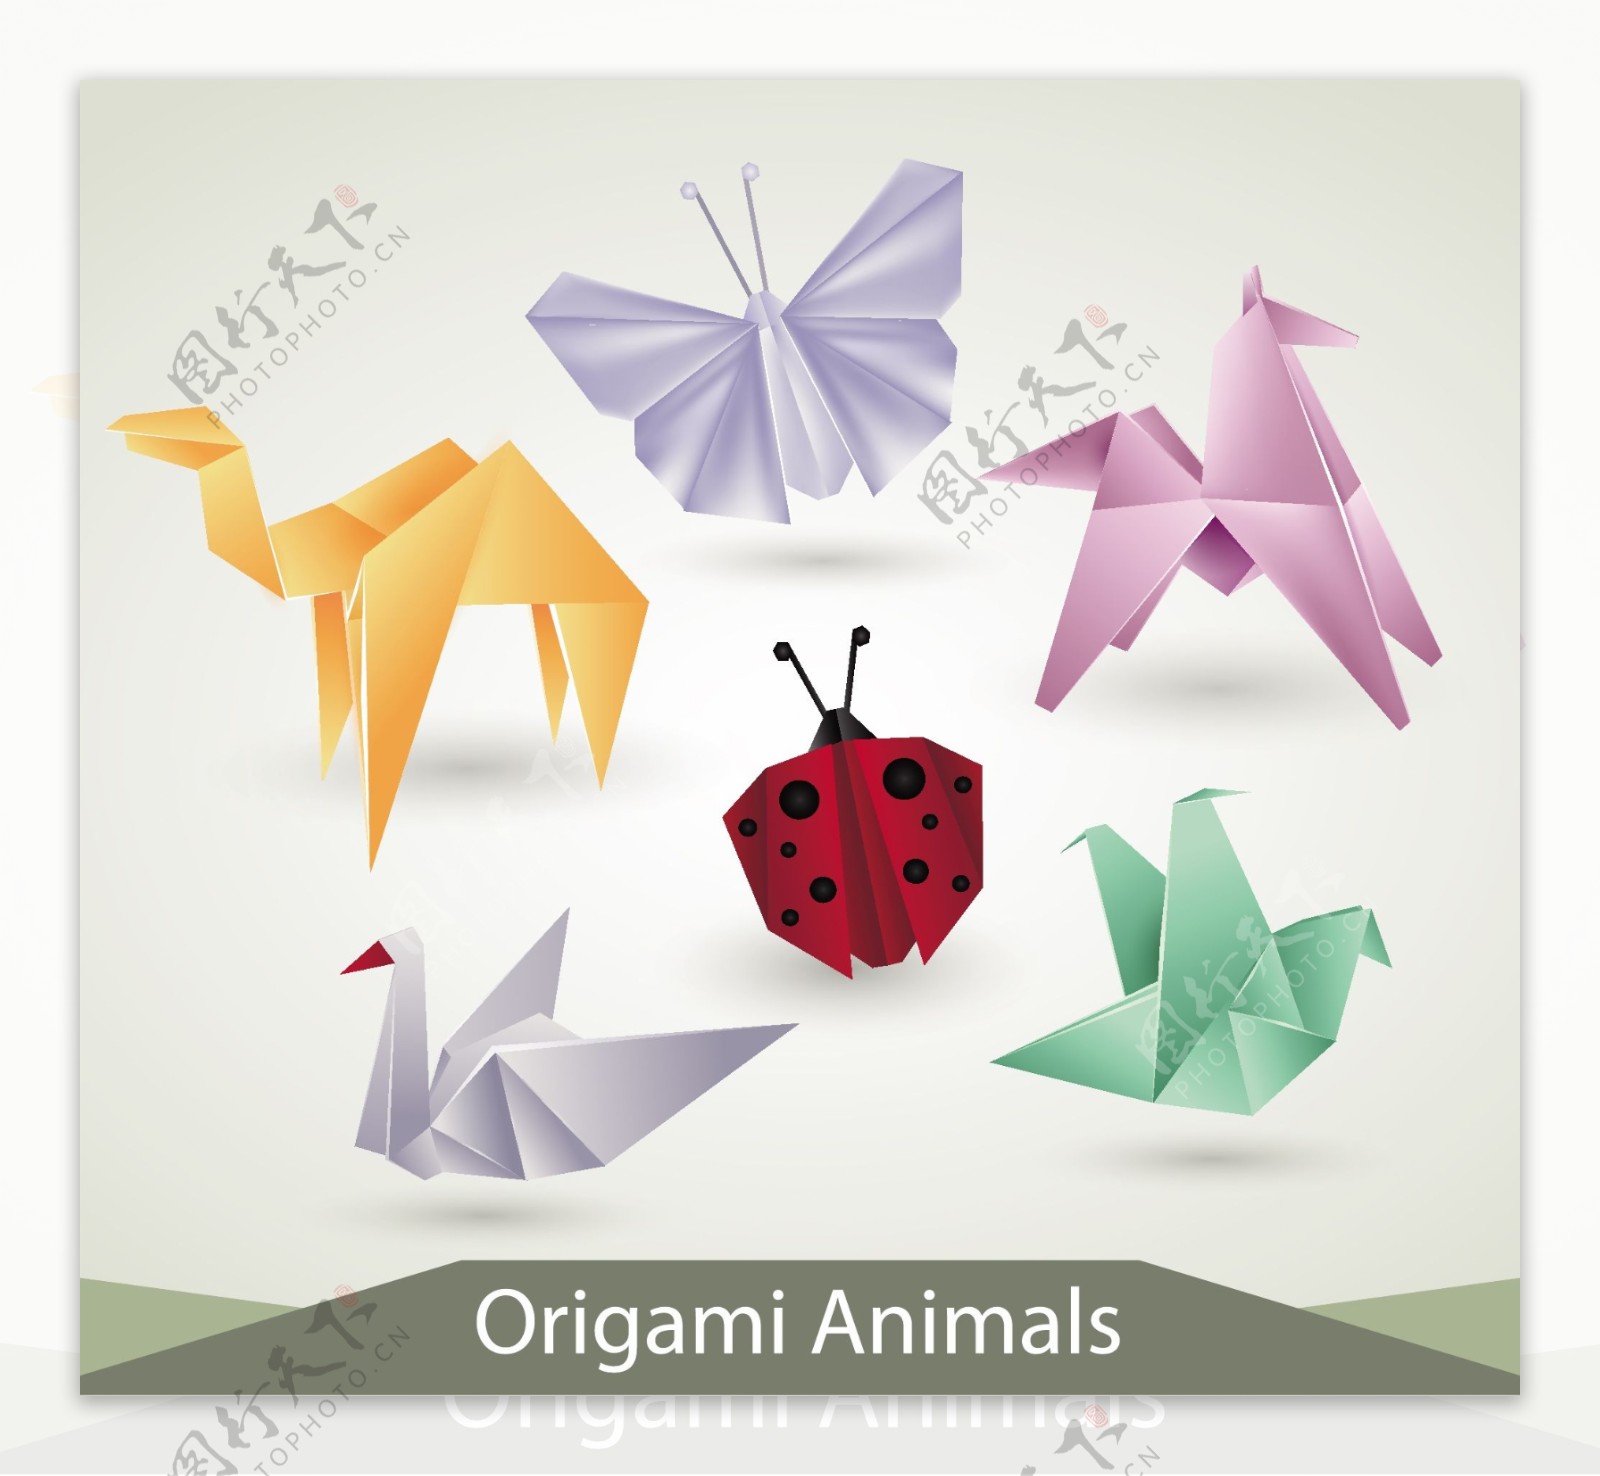 各种颜色折纸动物形象矢量素材